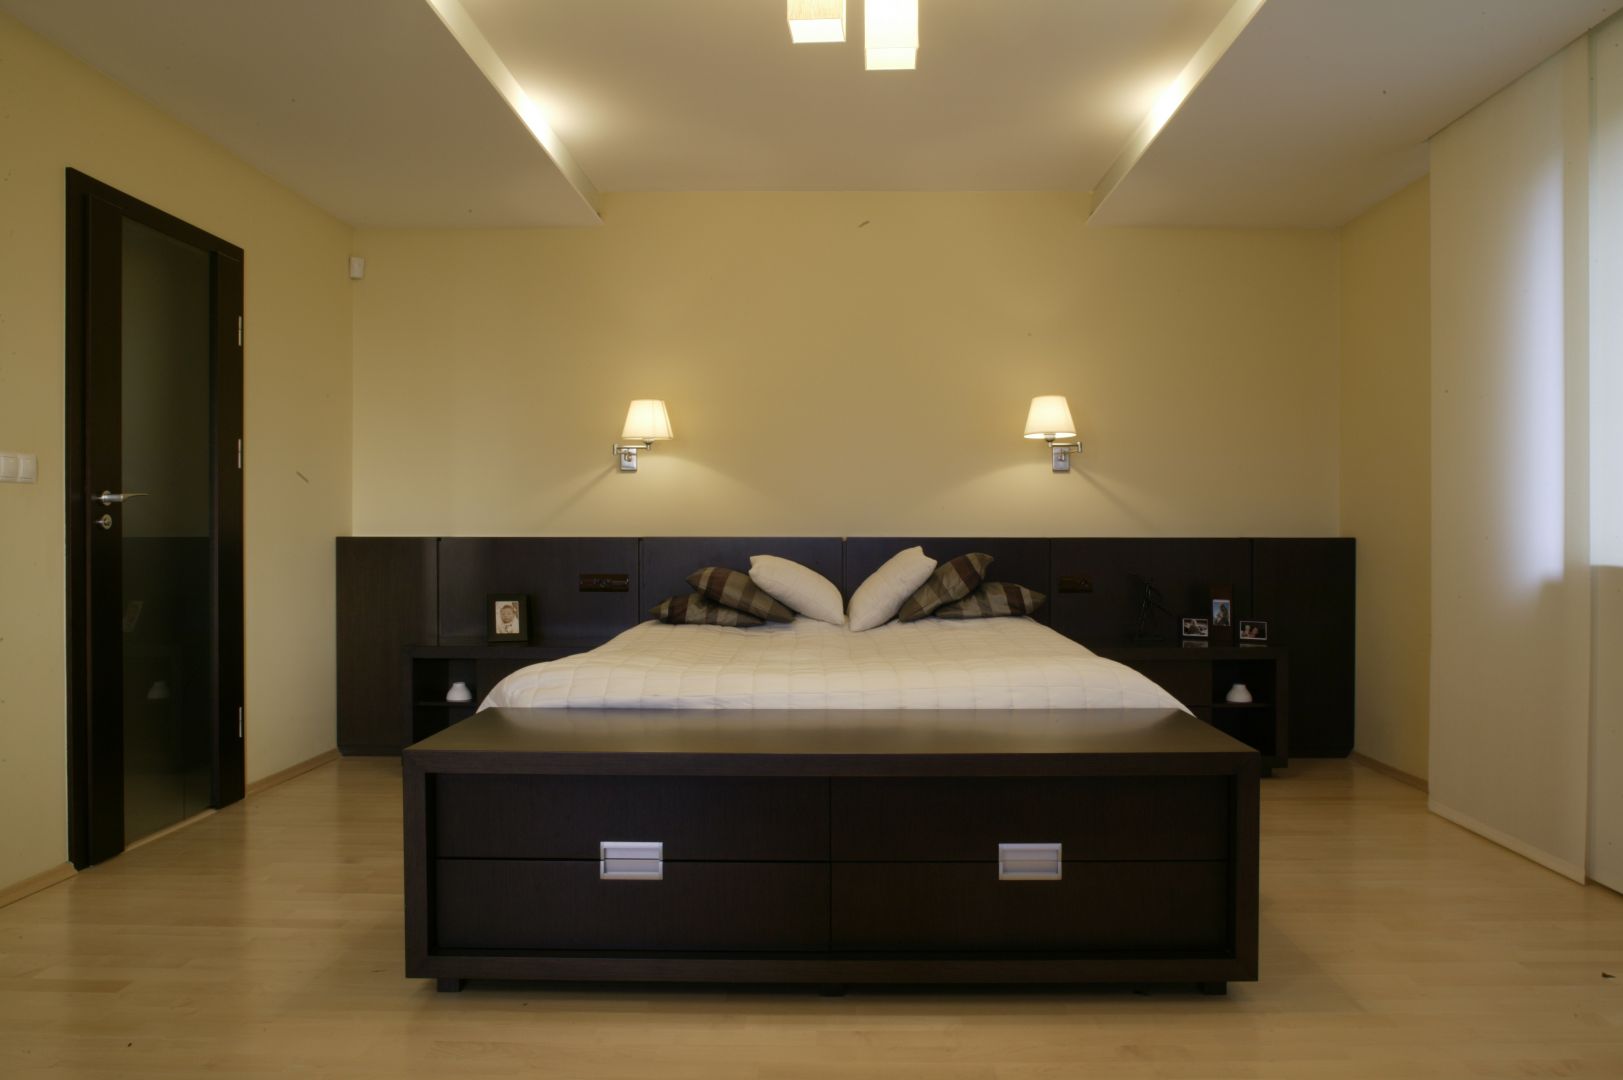 Sypialnia urządzona w minimalistycznym stylu. Masywne, drewniane łoże oraz ławka ulokowana tuż obok, to podstawowe elementy tego wnętrza. Projekt: Wojciech Mazur. Fot. Bartosz Jarosz